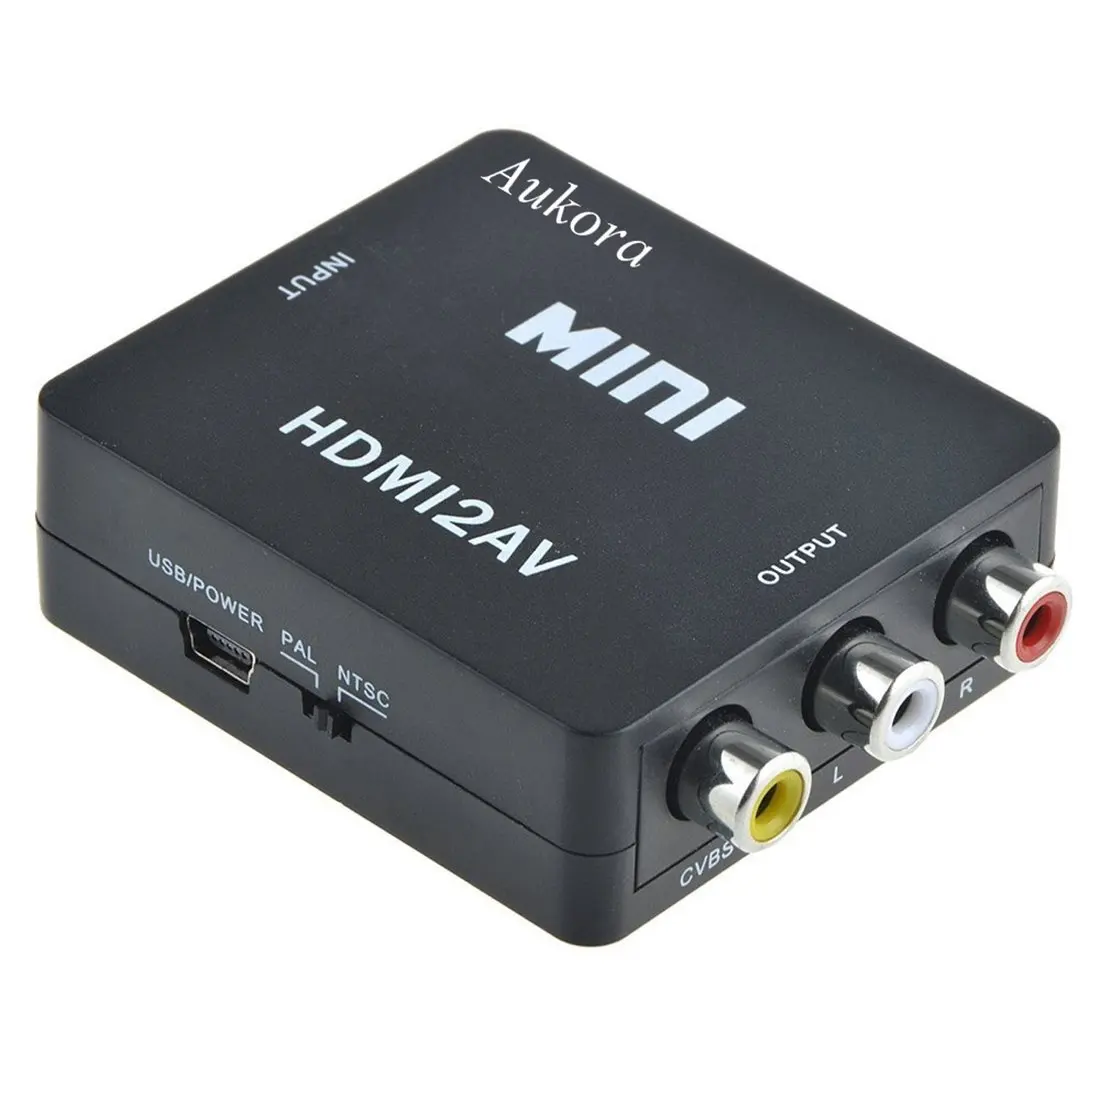 Av универсальный. Mini hdmi2av. Видео конвертер Mini av2hdmi. Адаптер Mini av 2 HDMI Converter 3 RCA 1080p.